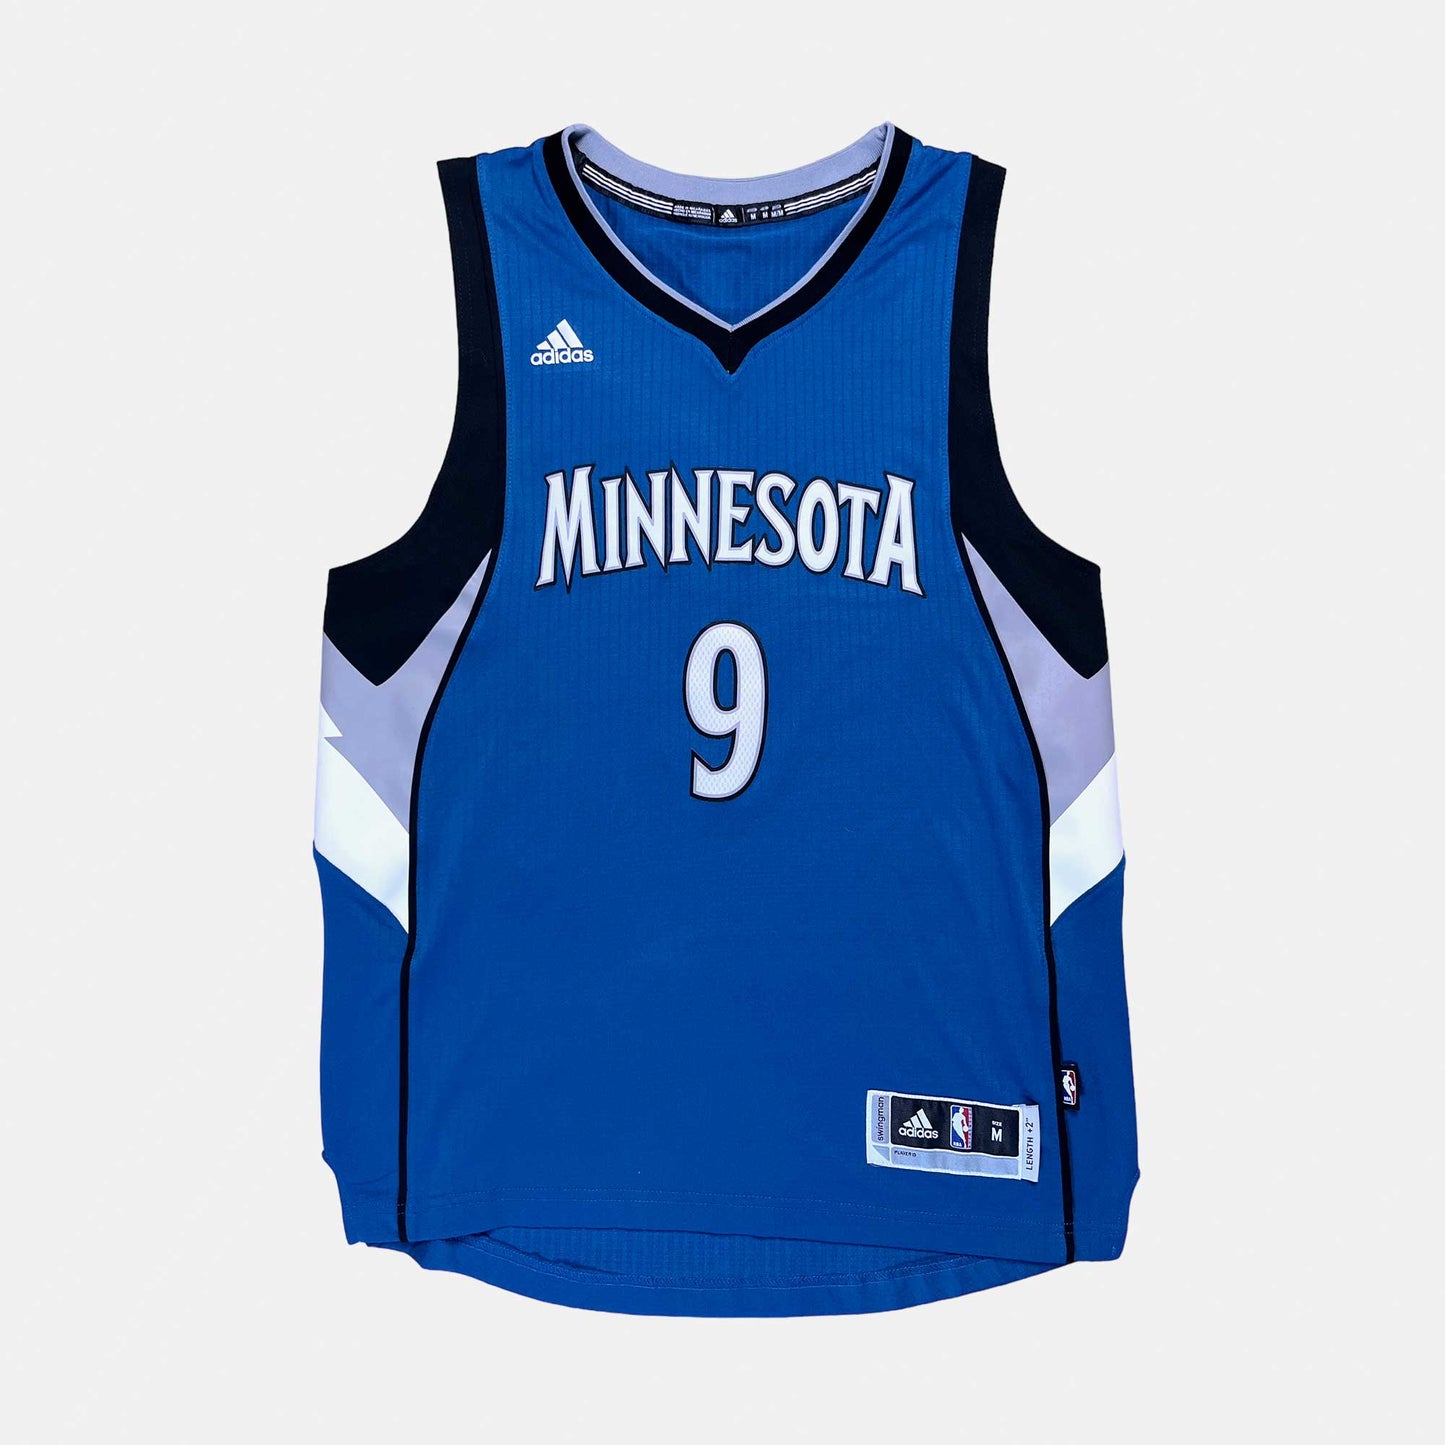 Minnesota Timberwolves - Ricky Rubio - Größe M - Adidas - NBA Trikot